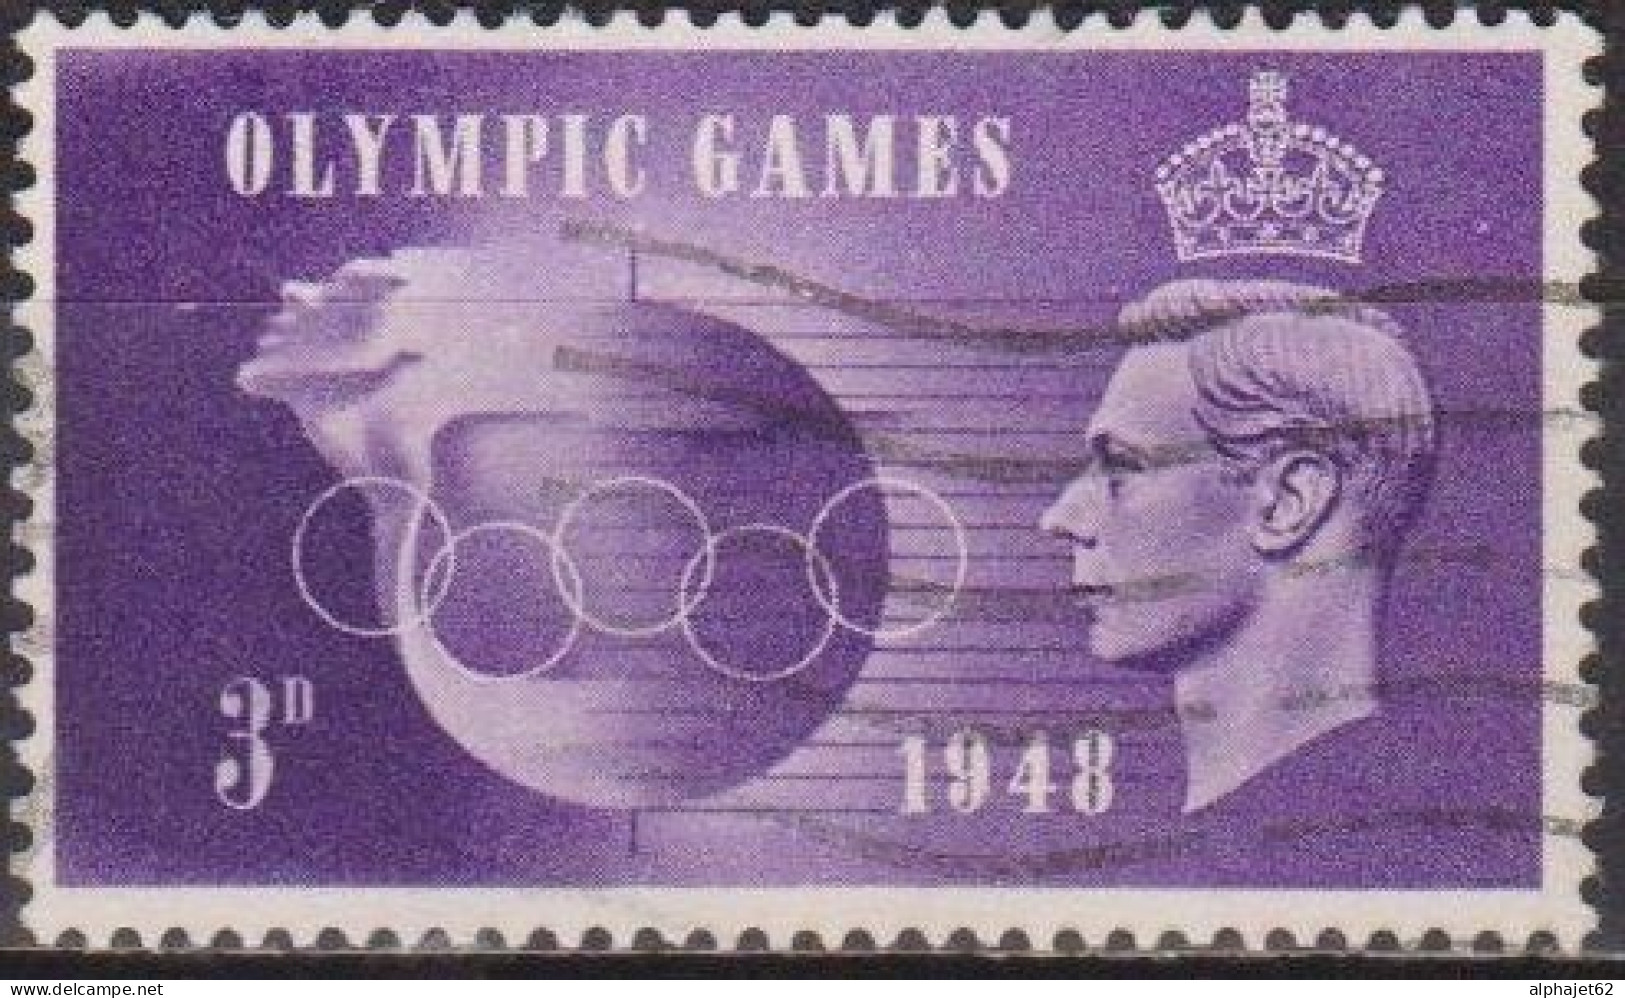 Jeux Olympiques De Londres - GRANDE BRETAGNE - Globe Et Anneaux - N° 242 - 1948 - Used Stamps